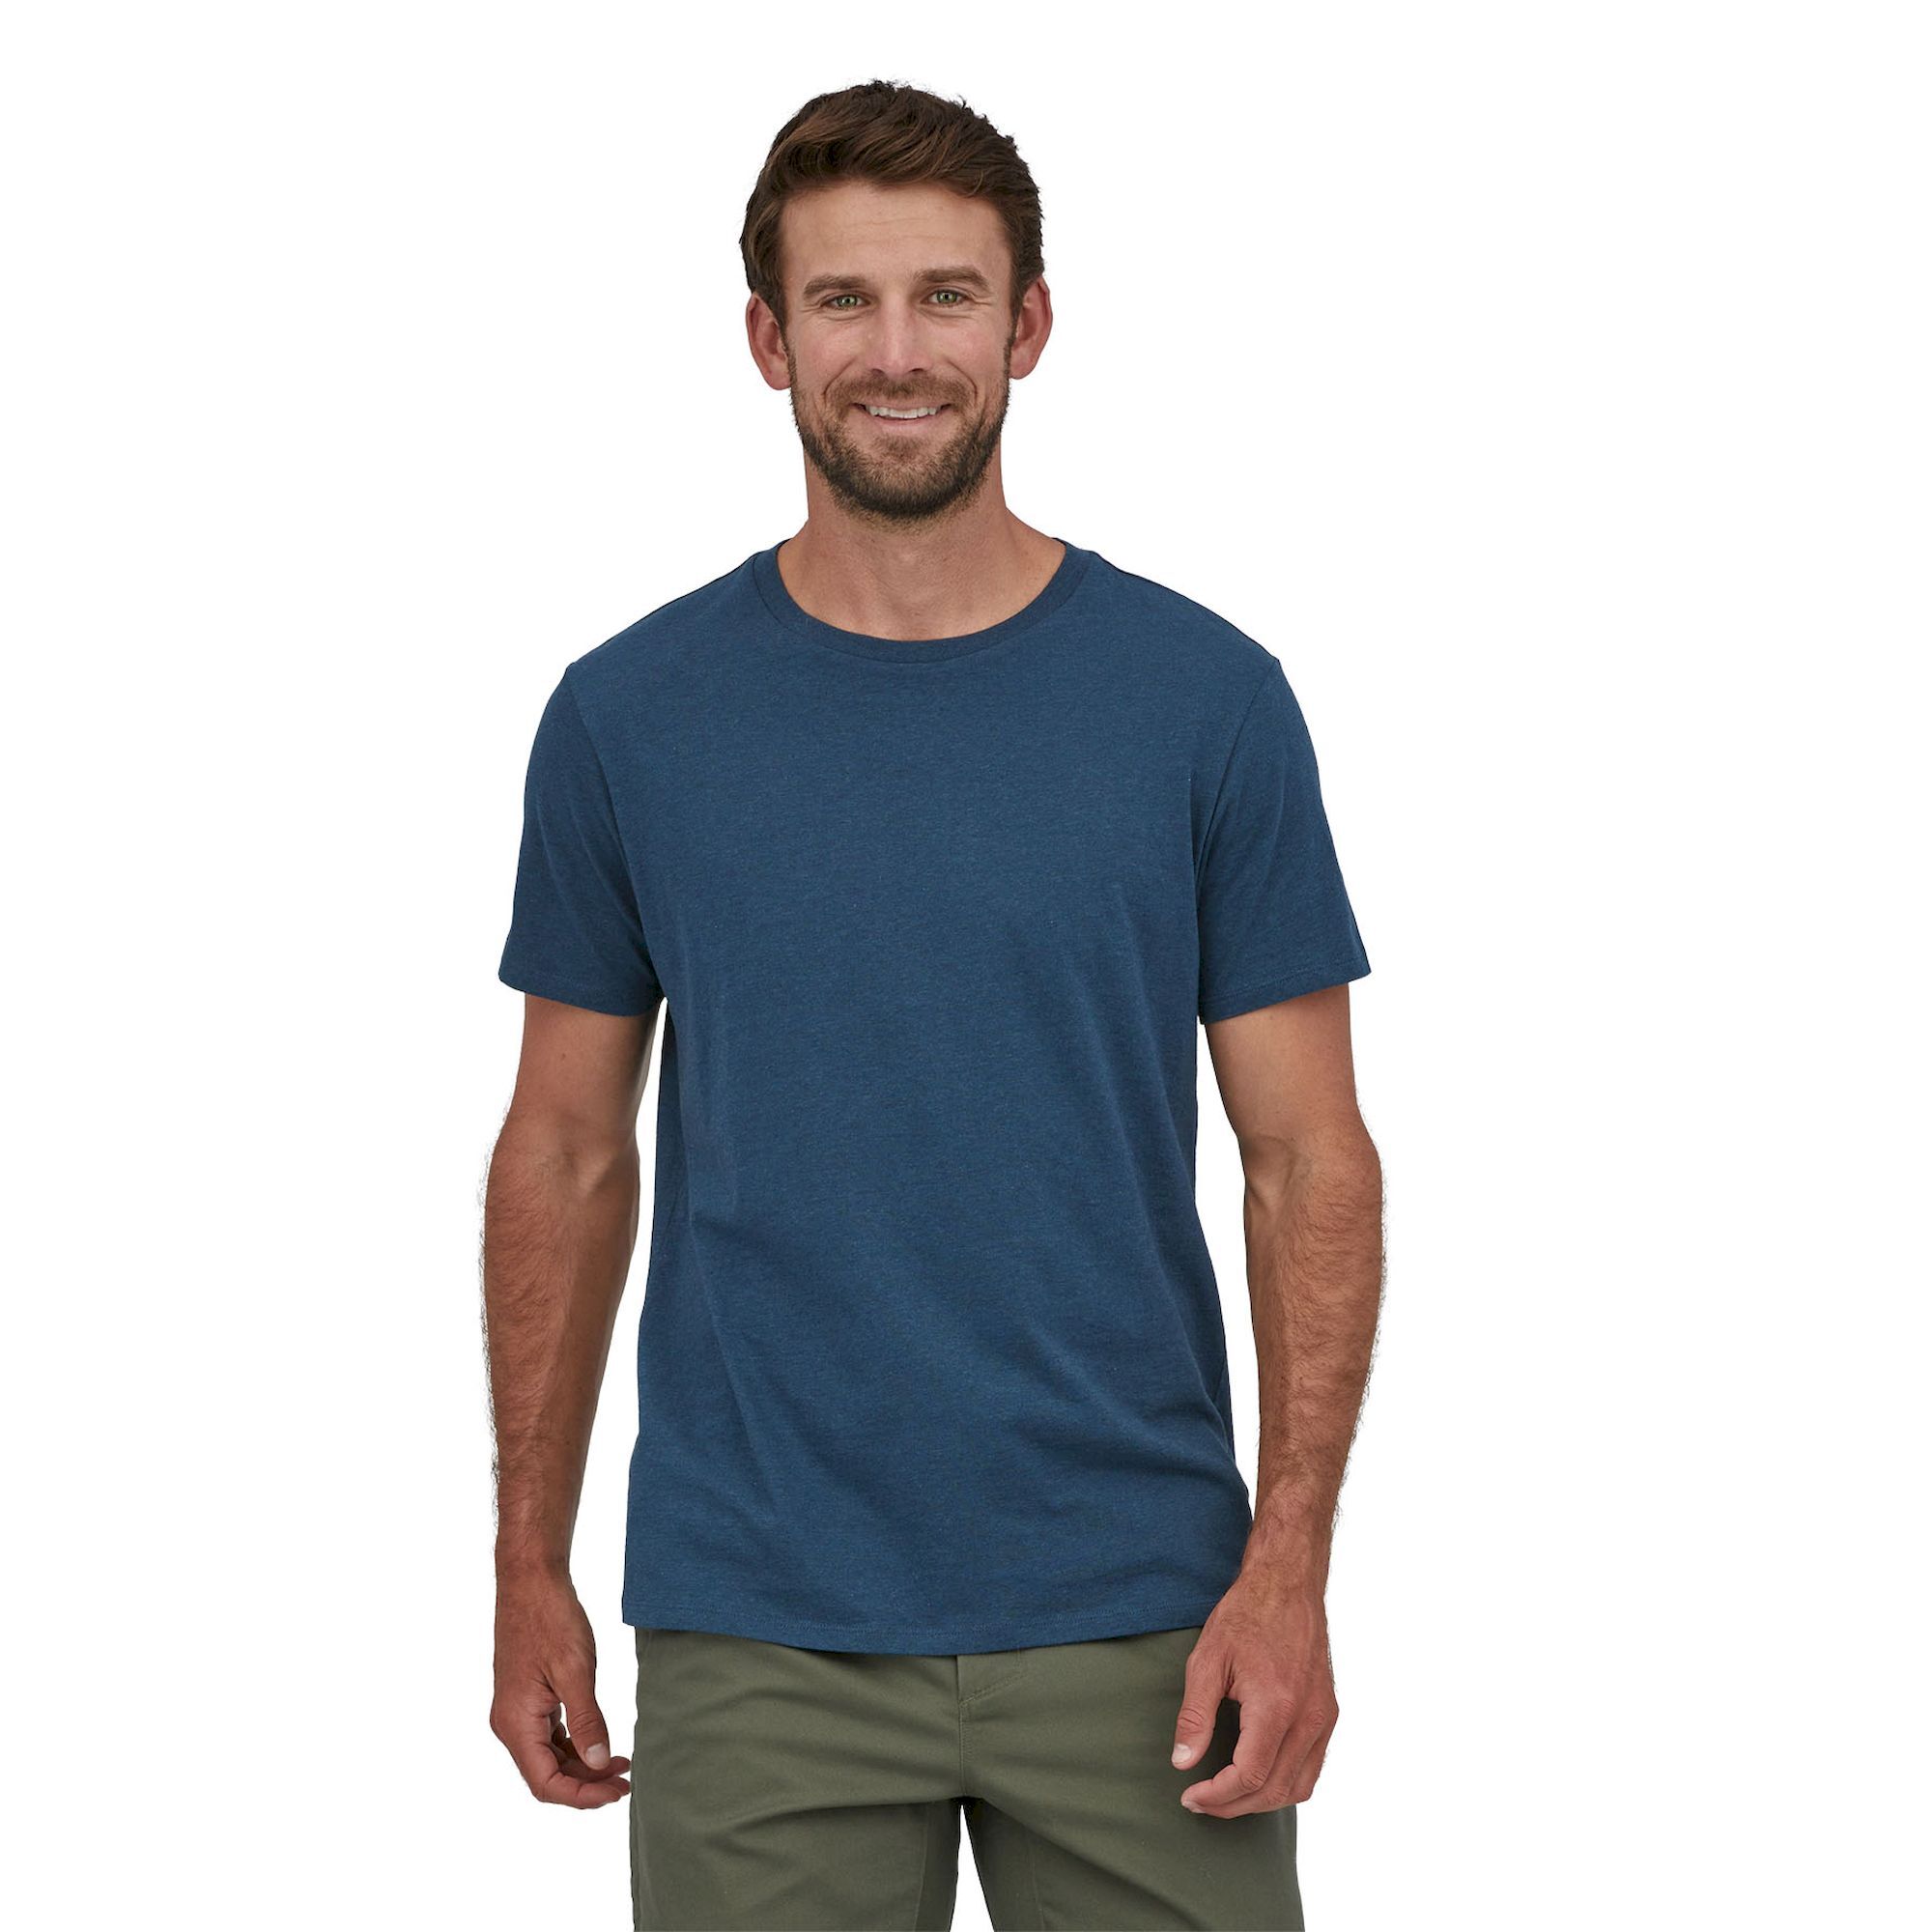 Patagonia Regenerative Organic Certified Cotton LW - T-shirt - Uomo